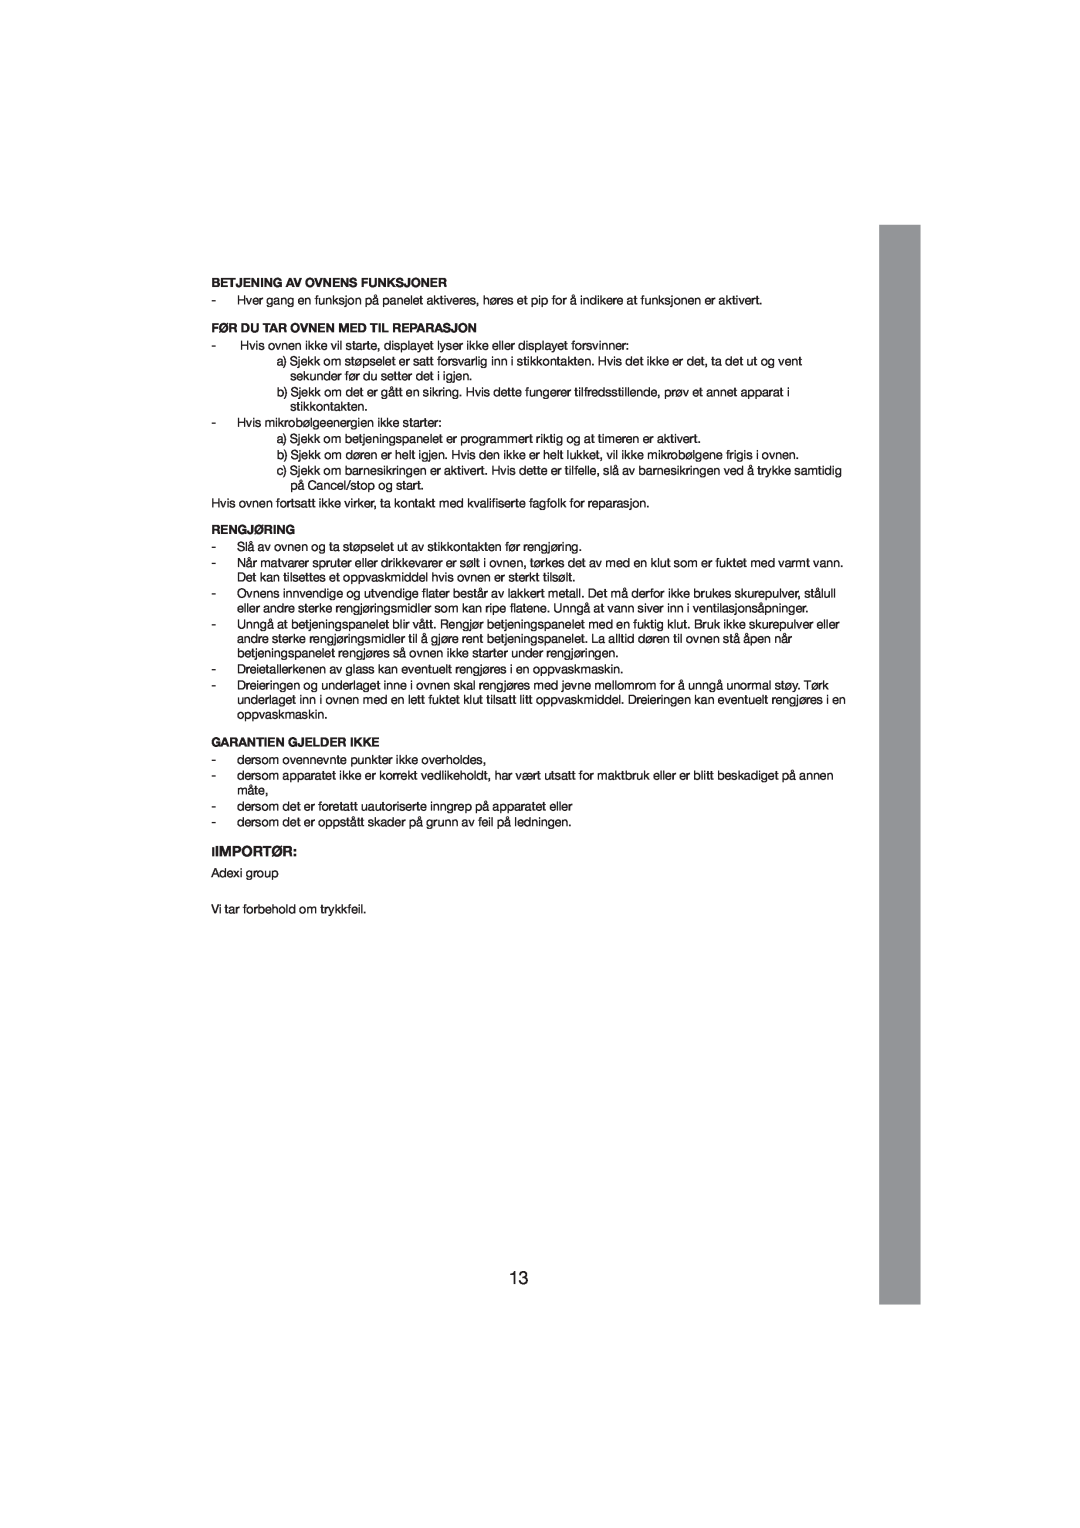 Melissa 253-001 manual Iimportør, Betjening Av Ovnens Funksjoner, Før Du Tar Ovnen Med Til Reparasjon, Rengjøring 